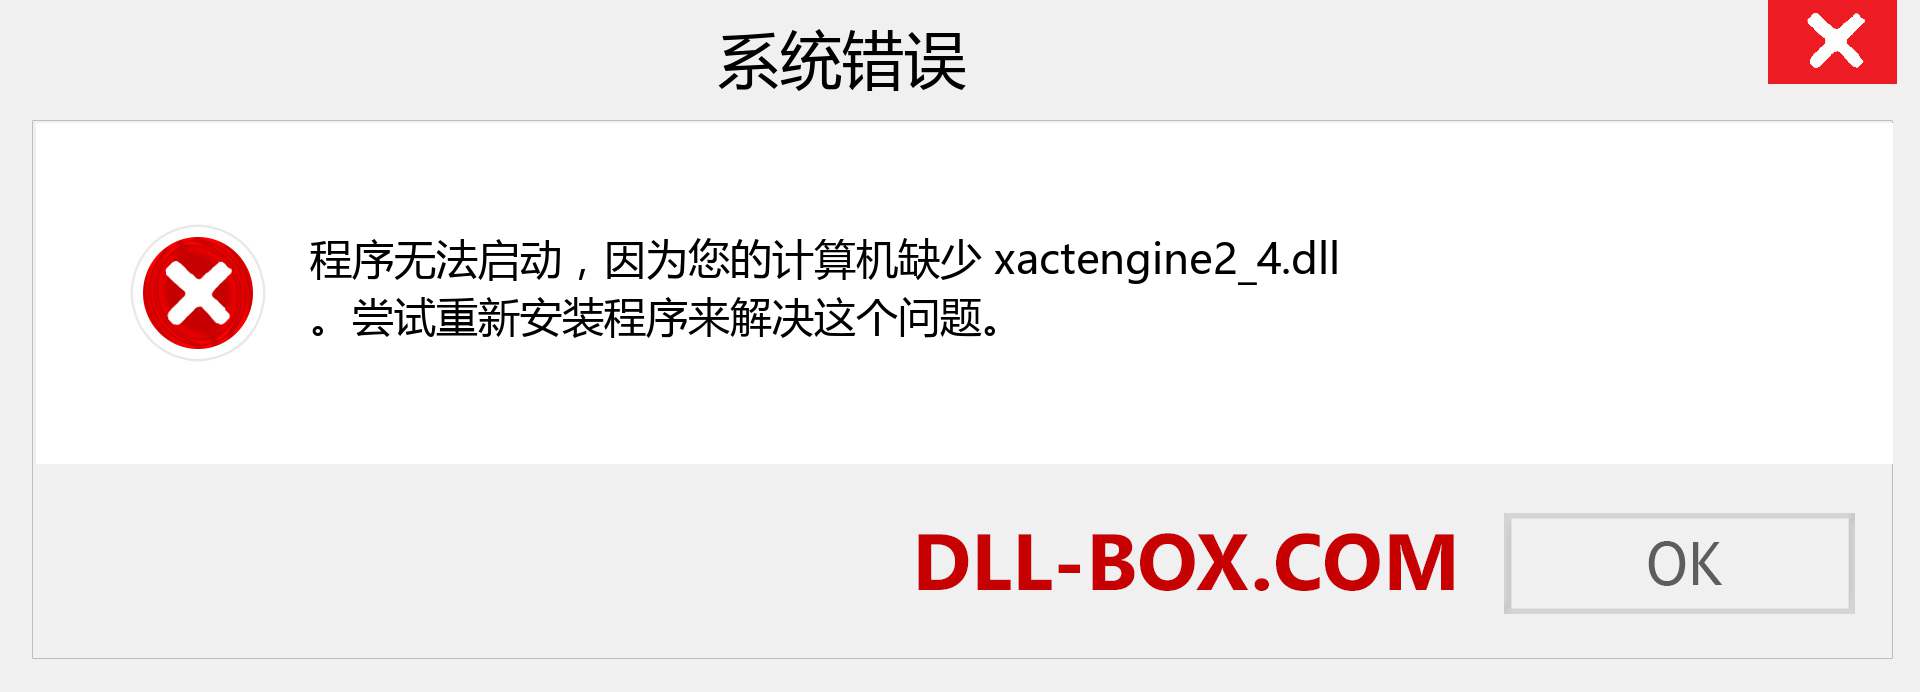 xactengine2_4.dll 文件丢失？。 适用于 Windows 7、8、10 的下载 - 修复 Windows、照片、图像上的 xactengine2_4 dll 丢失错误